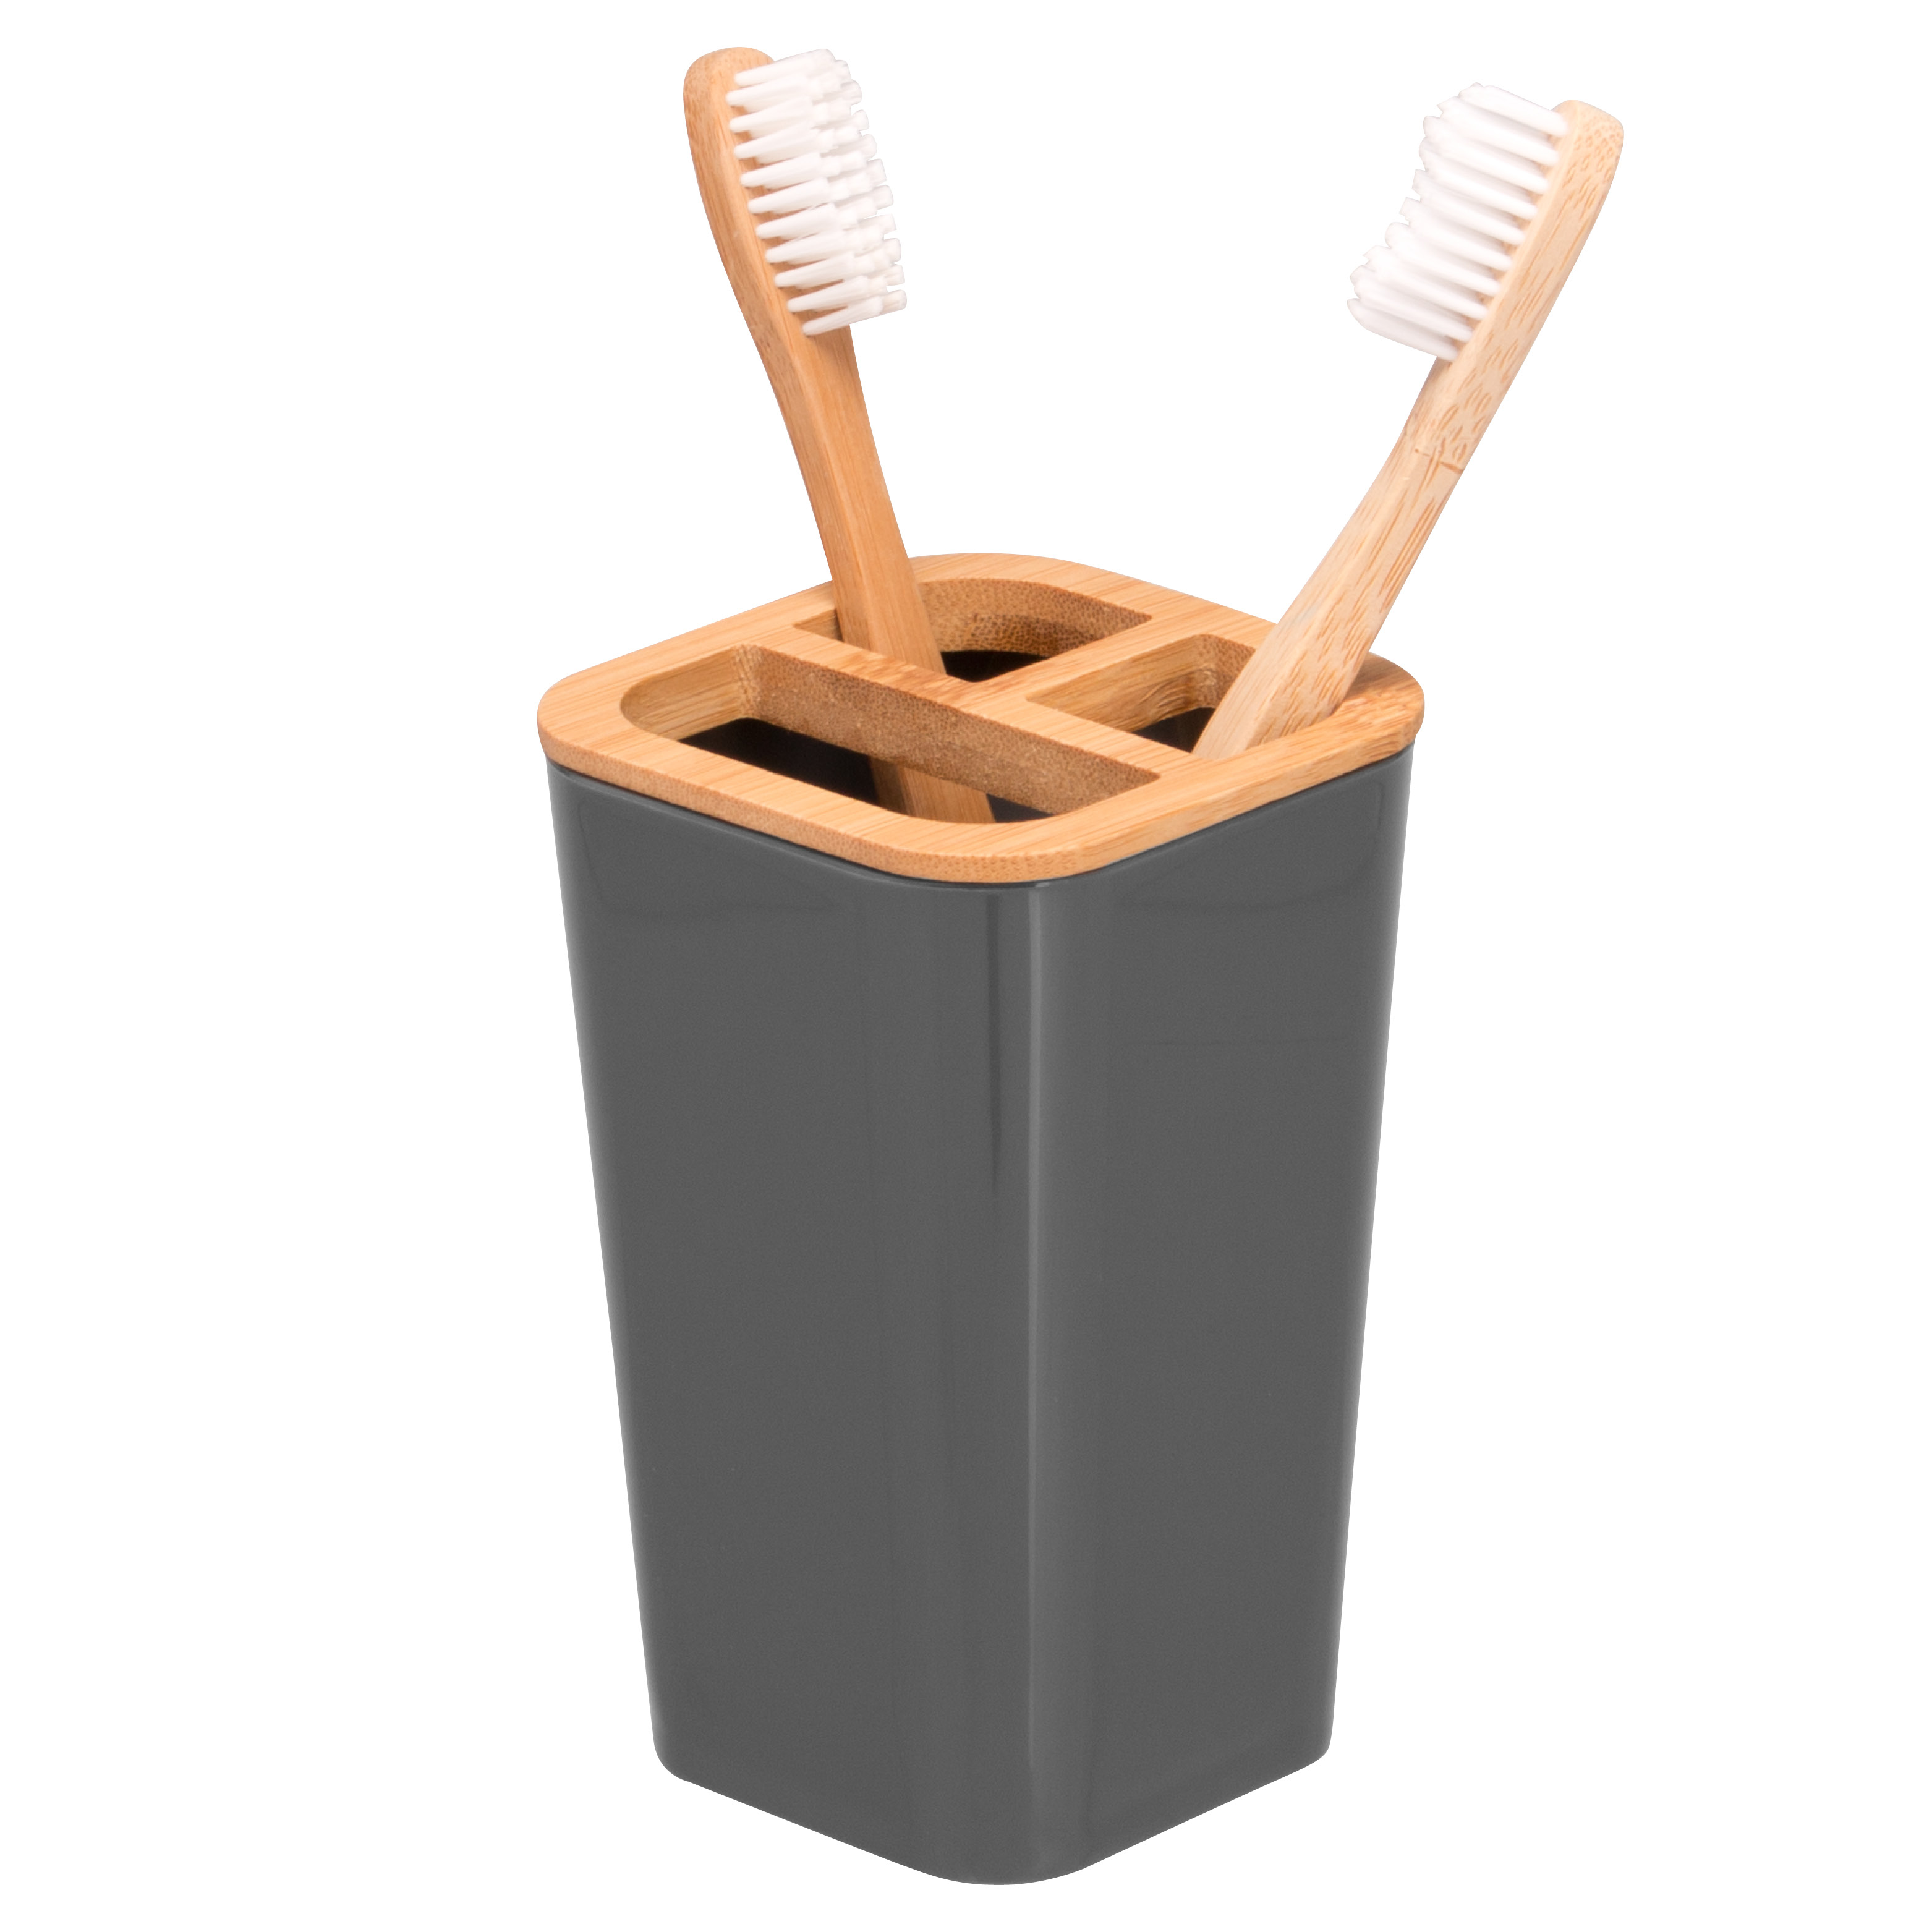 Zahnbürstenhalter CALVI aus Bambus und Kunststoff | Utensilienständer | Mundspülbecher, grau